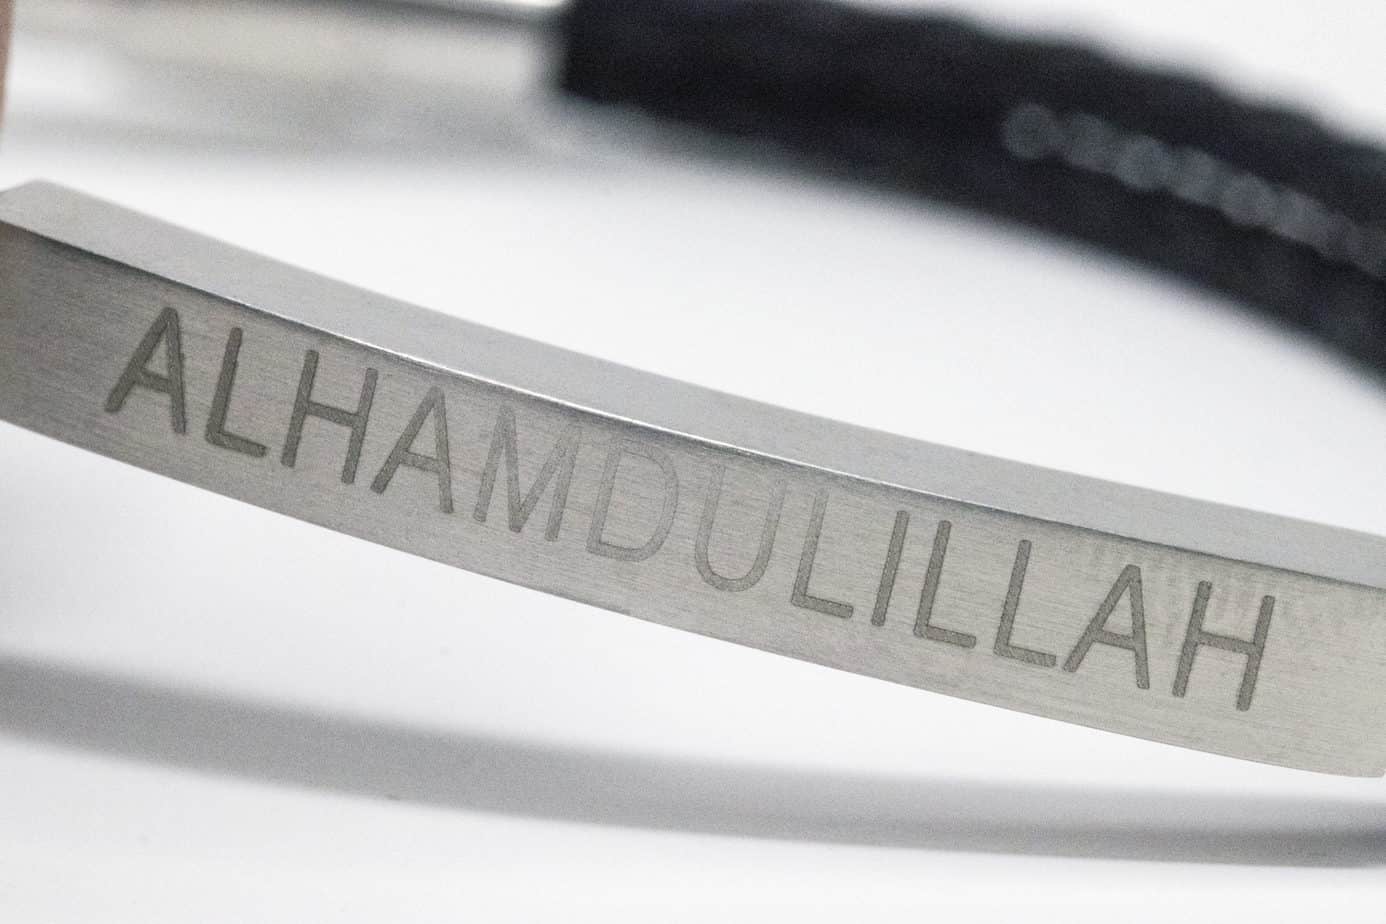 Alhamdulillah Braided Bracelet